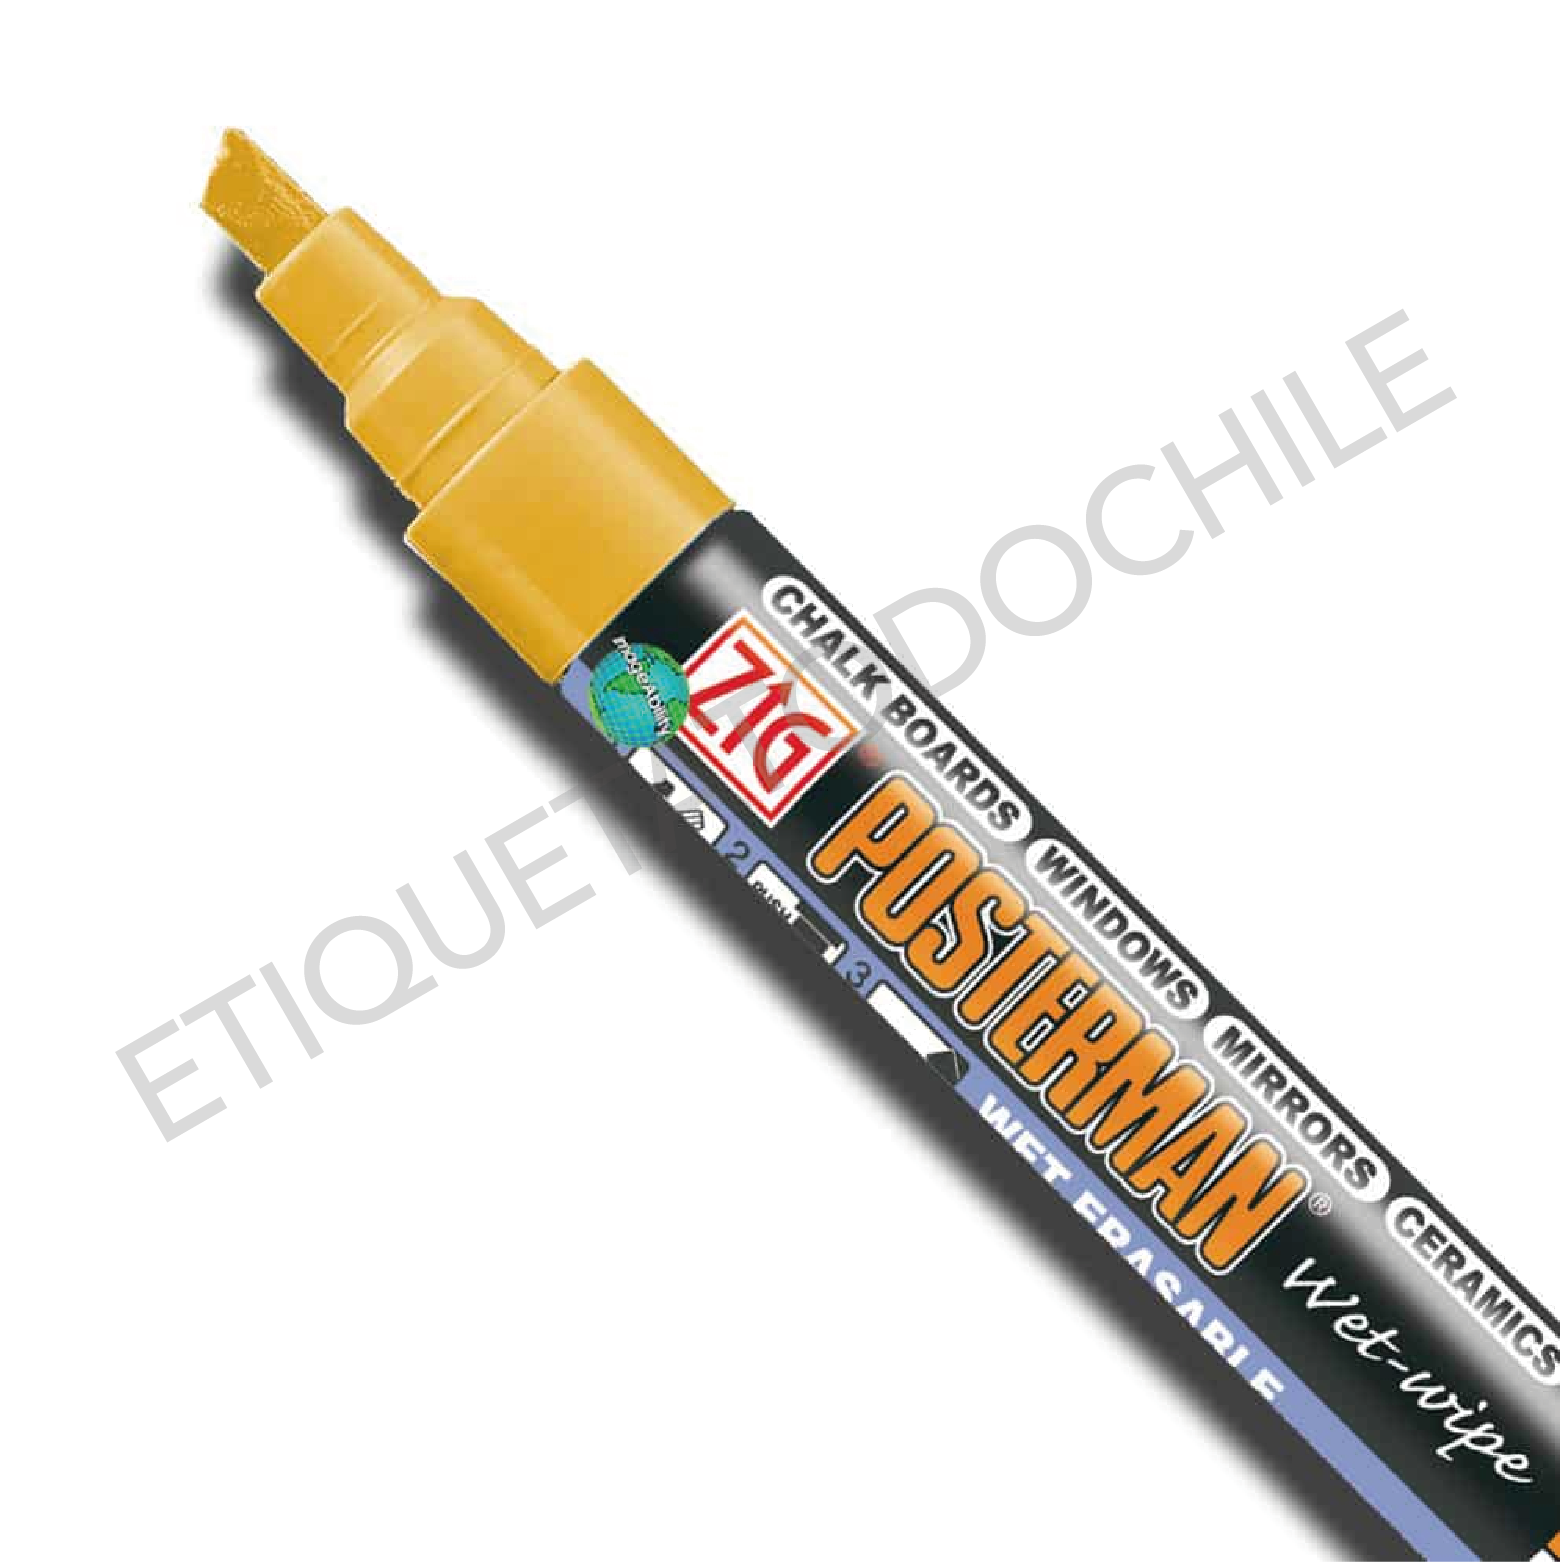 Rotuladores de pintura dorada, paquete de 6 rotuladores metálicos  permanentes a base de aceite, punta media, marcador de secado rápido e  impermeable